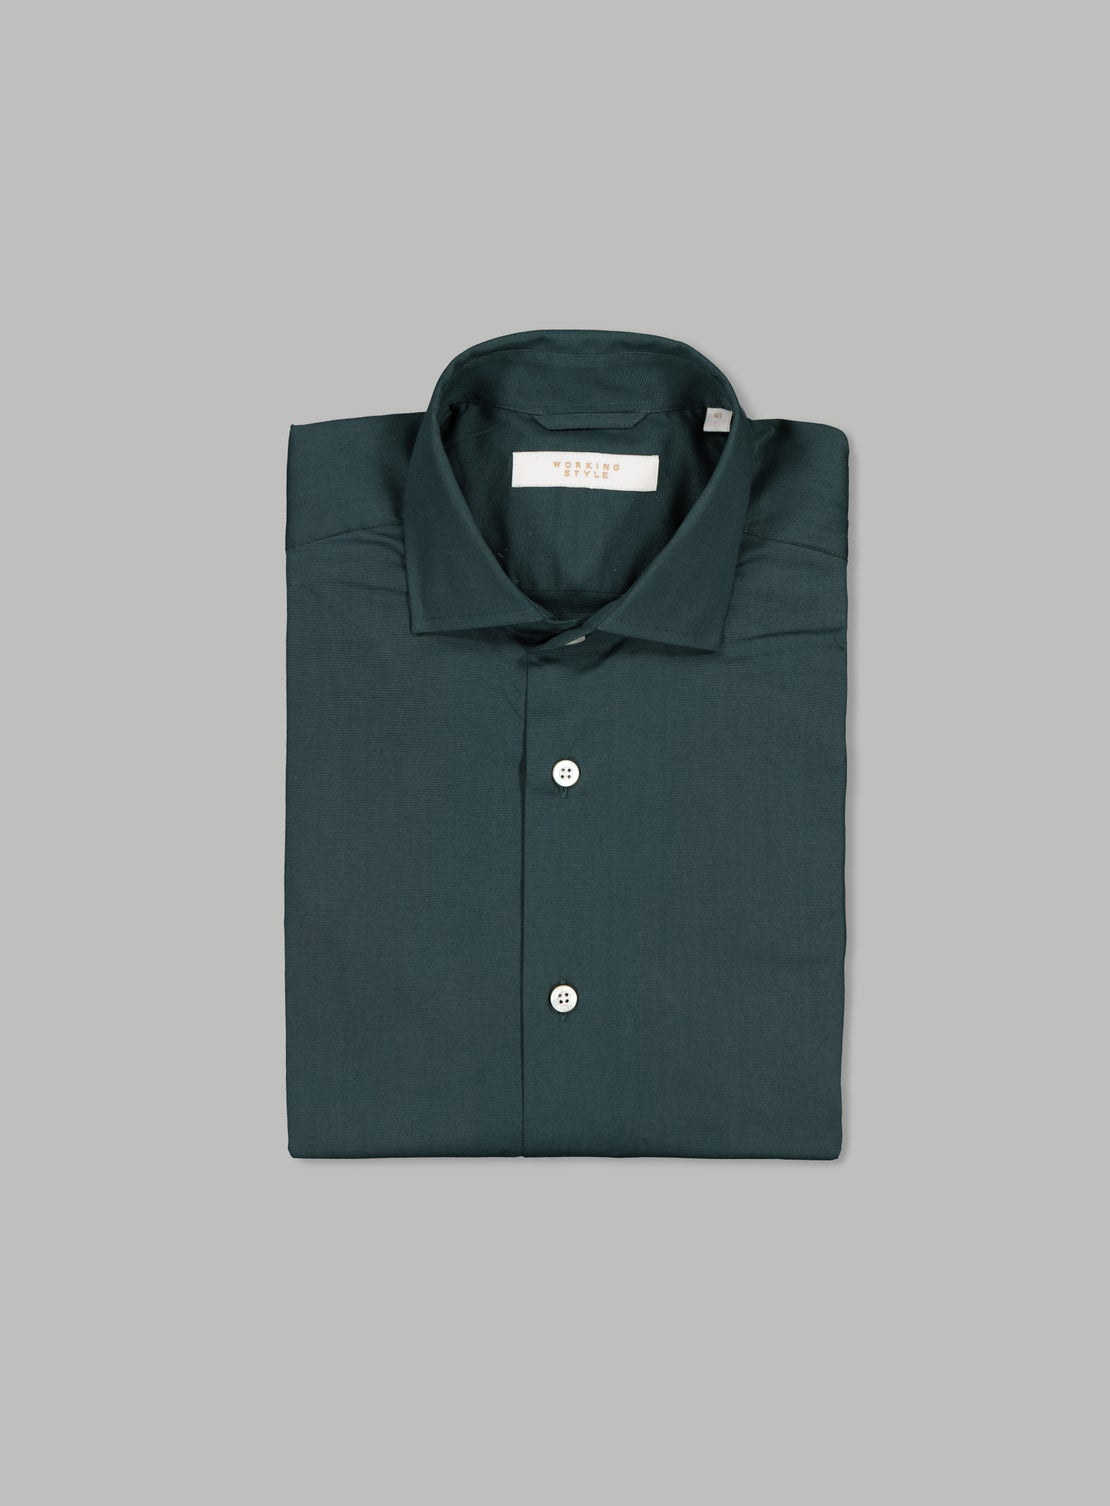 Henri Green Poplin Shirt